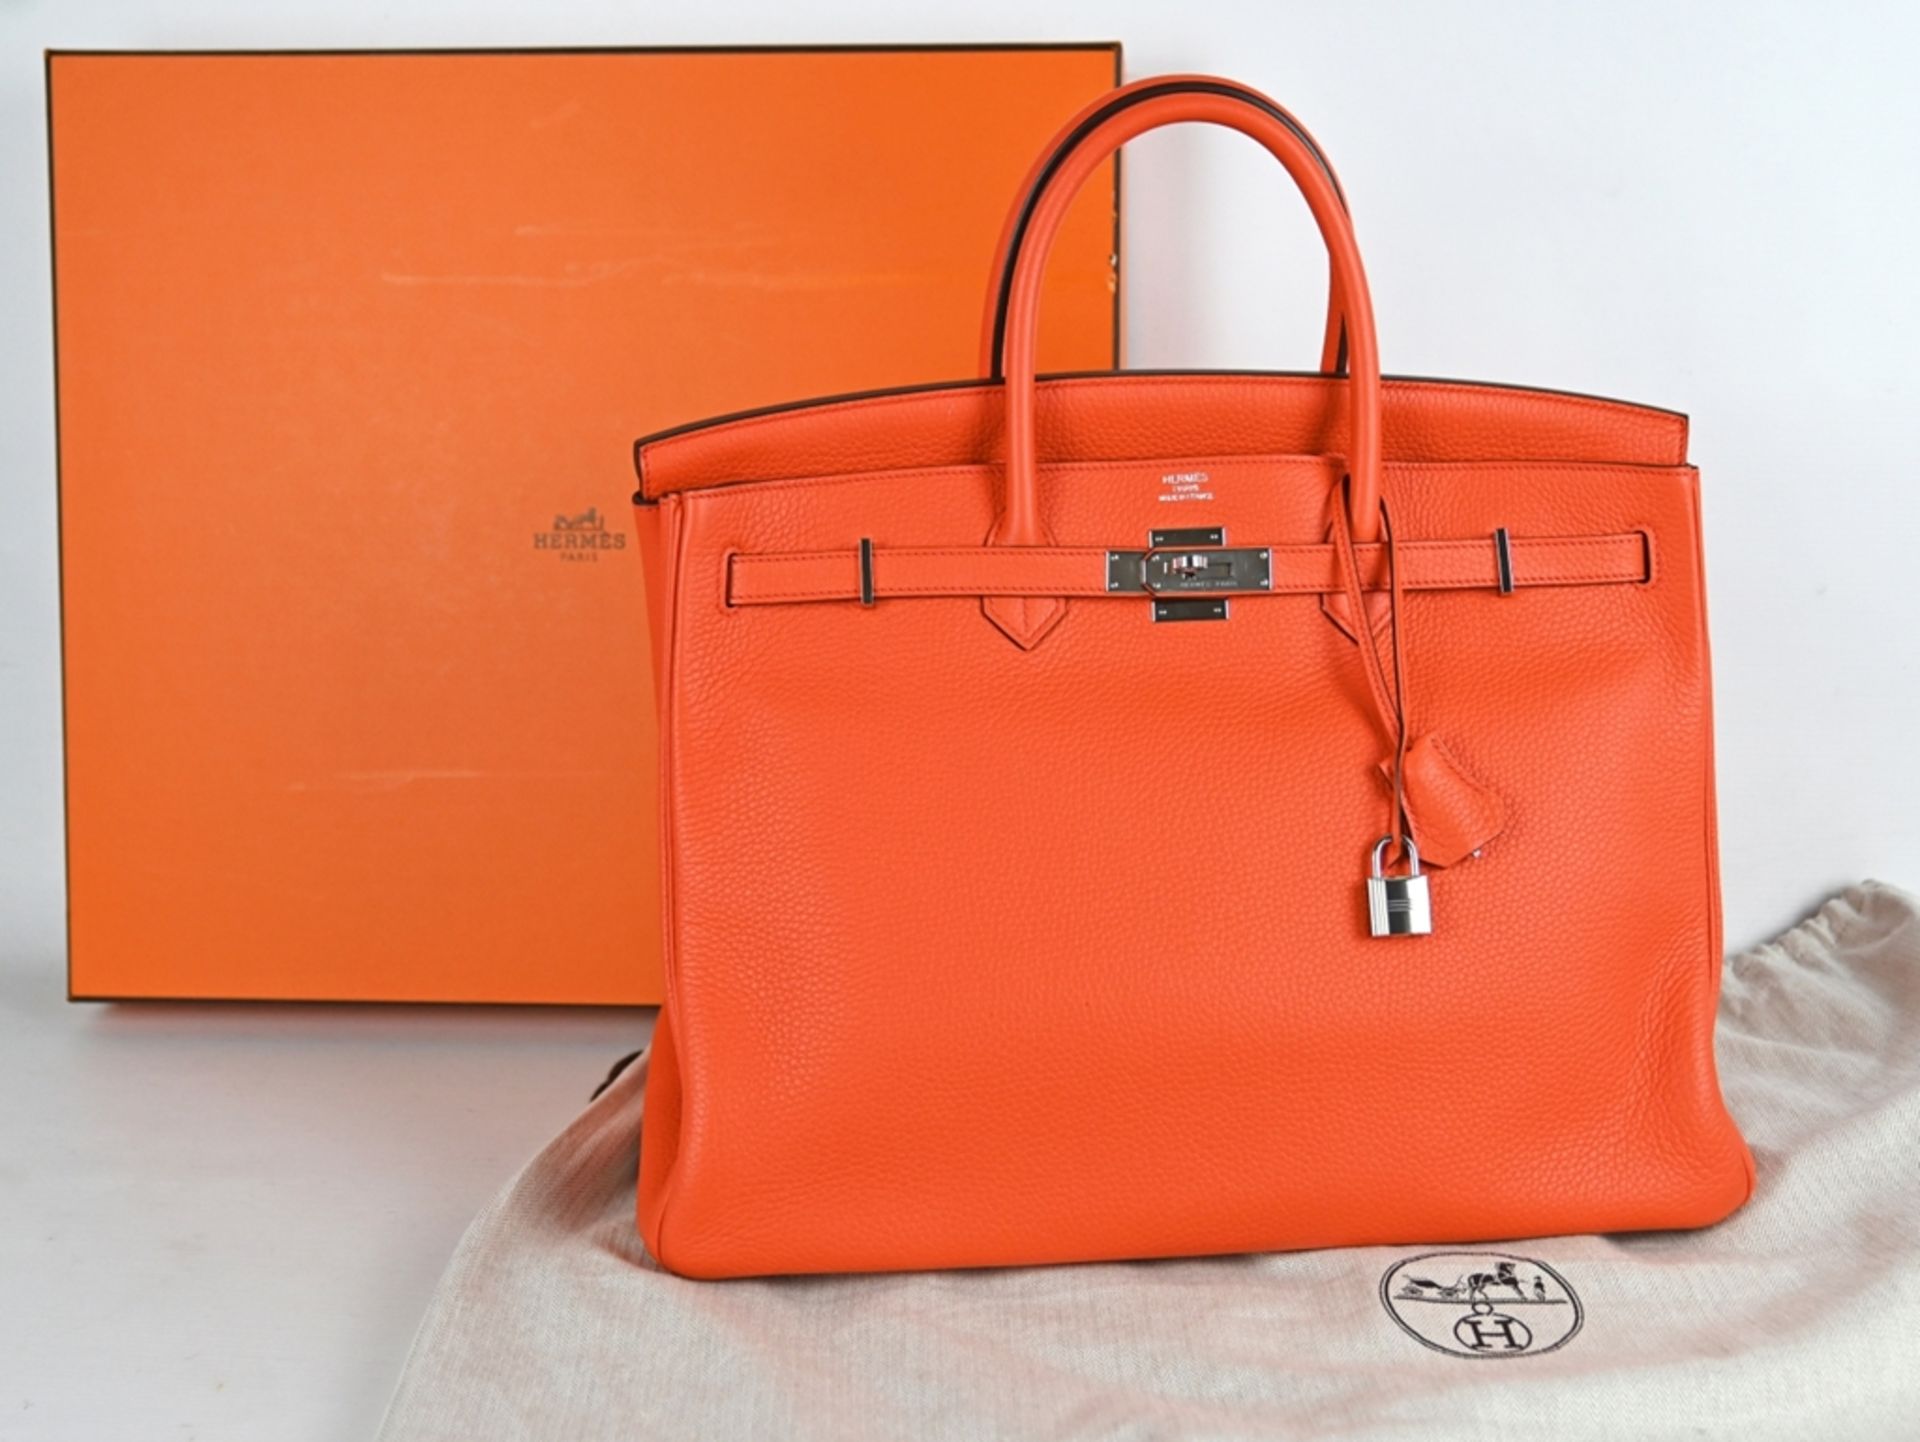 HANDTASCHE HERMÈS Birkin Bag 40, Poppy Orange, klassische Lederhandtasche mit Lederinnenfutter, zwe - Bild 2 aus 9